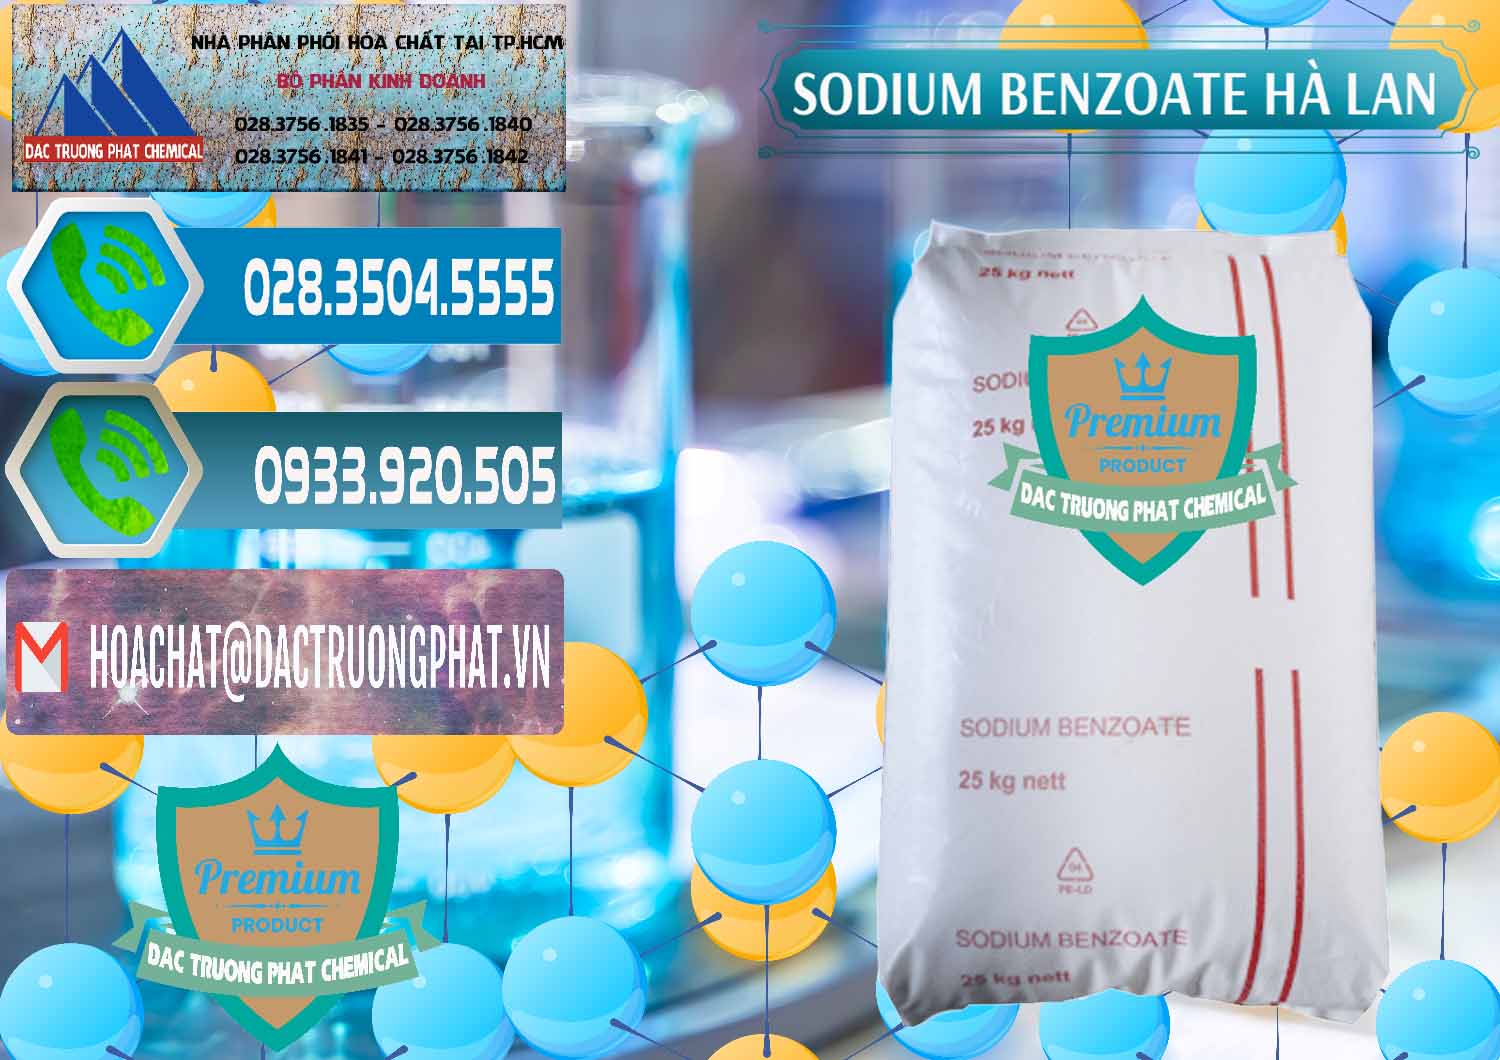 Công ty chuyên bán ( cung cấp ) Sodium Benzoate - Mốc Bột Chữ Cam Hà Lan Netherlands - 0360 - Đơn vị chuyên kinh doanh - cung cấp hóa chất tại TP.HCM - congtyhoachat.net